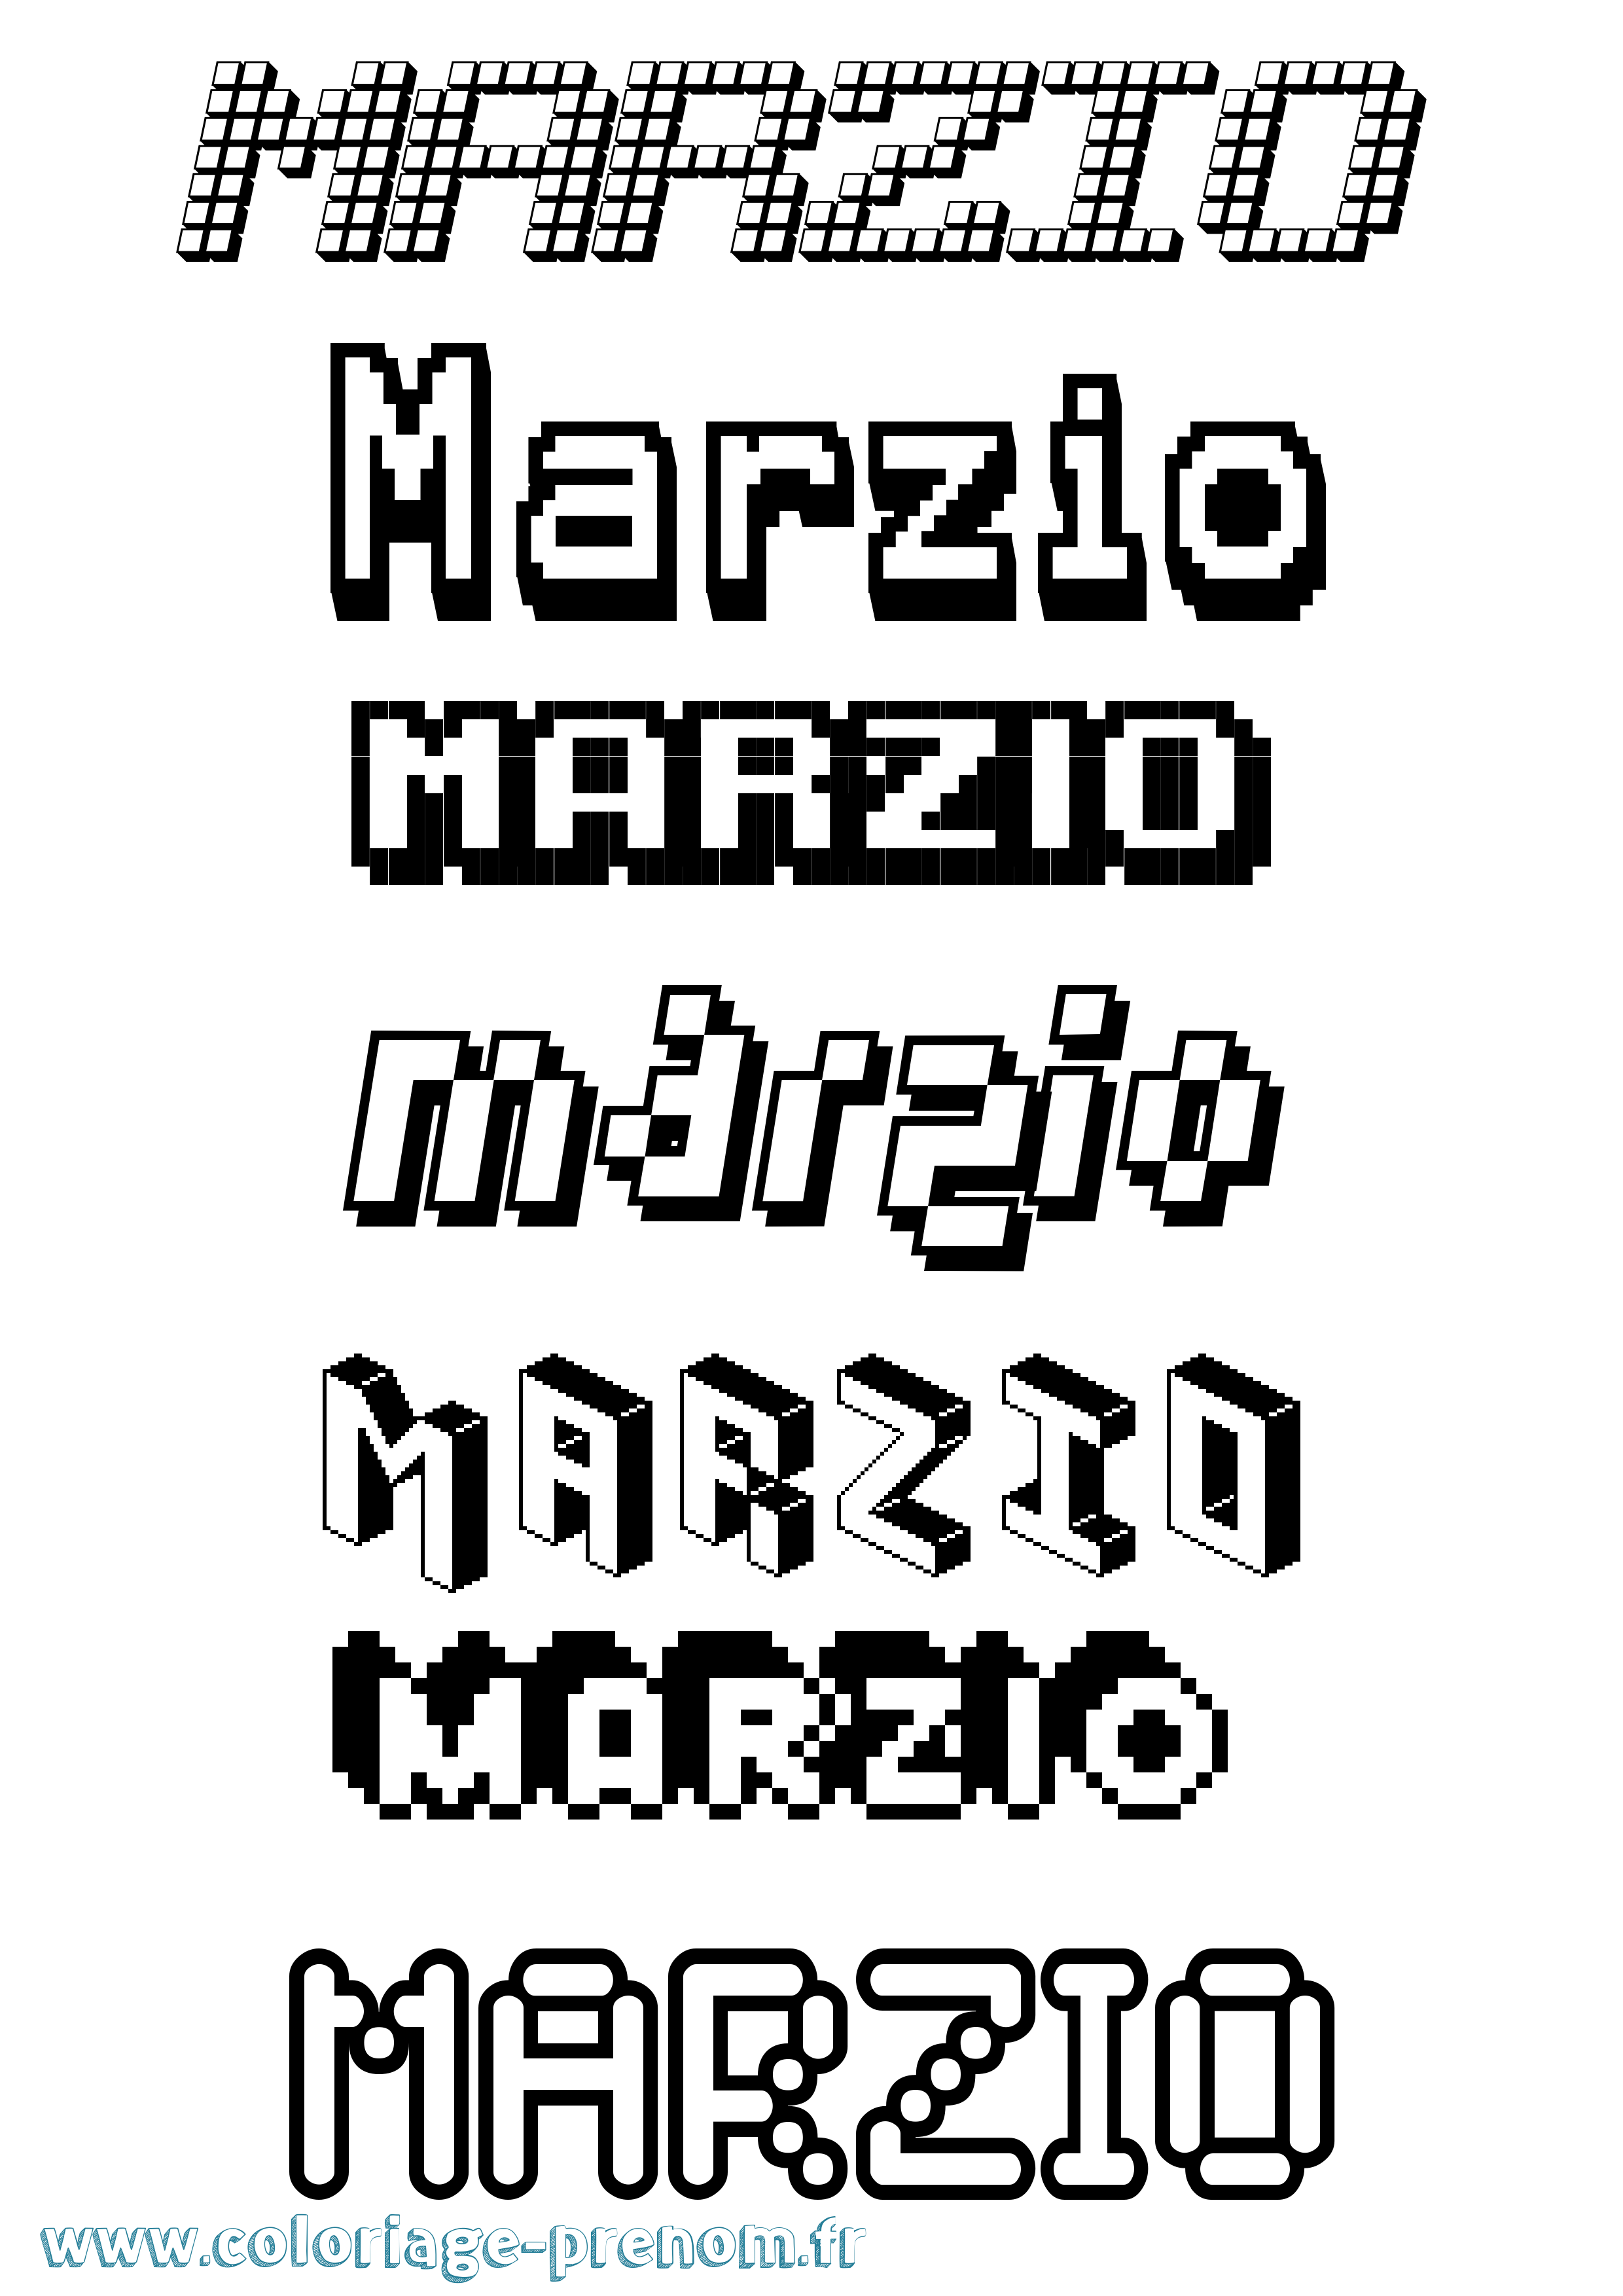 Coloriage prénom Marzio Pixel